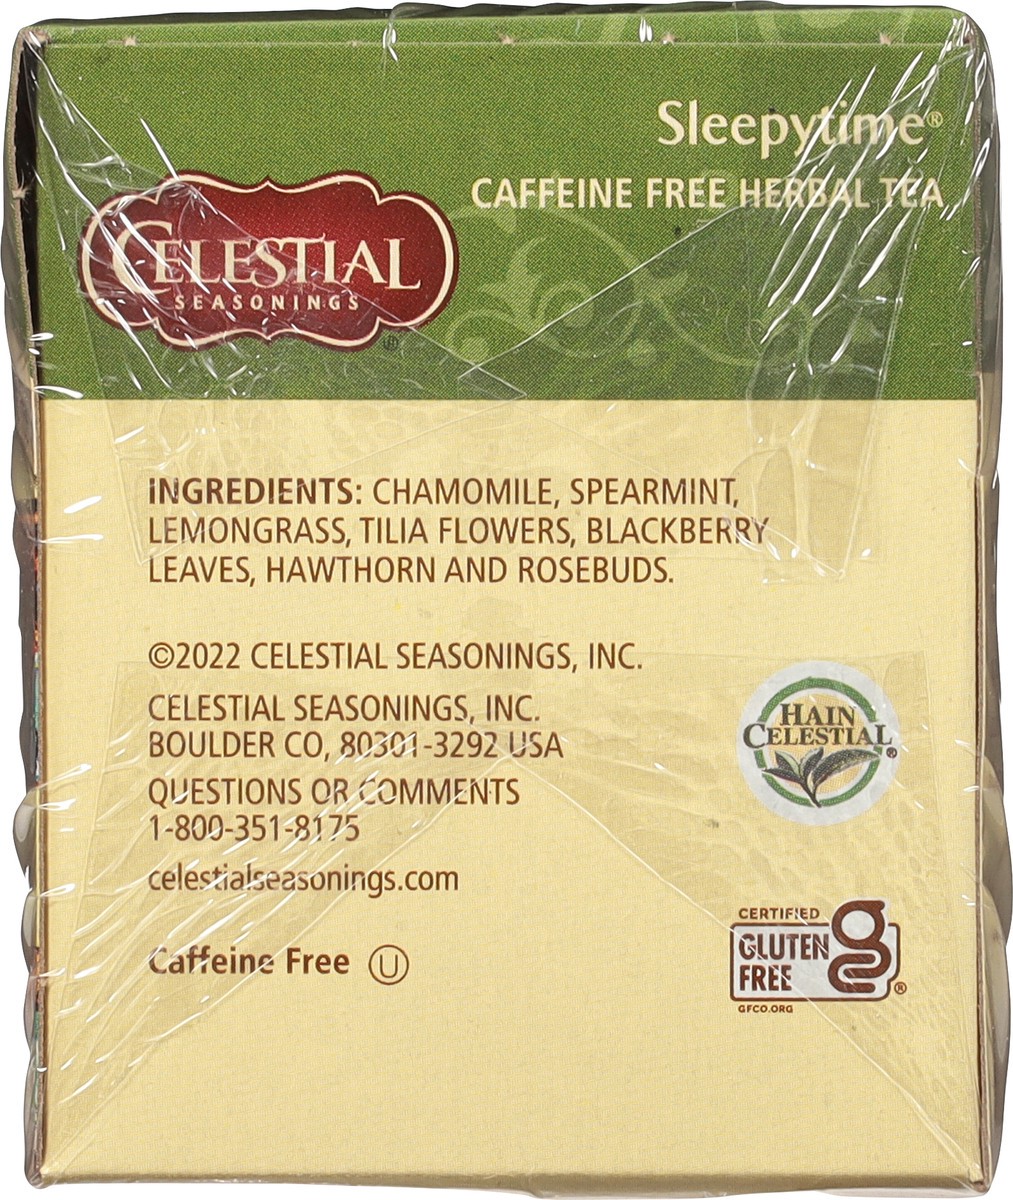 slide 6 of 8, Celestial Seasonings Sleepytime Caffeine Free Herbal Tea 20 Tea Bags, 20 ct